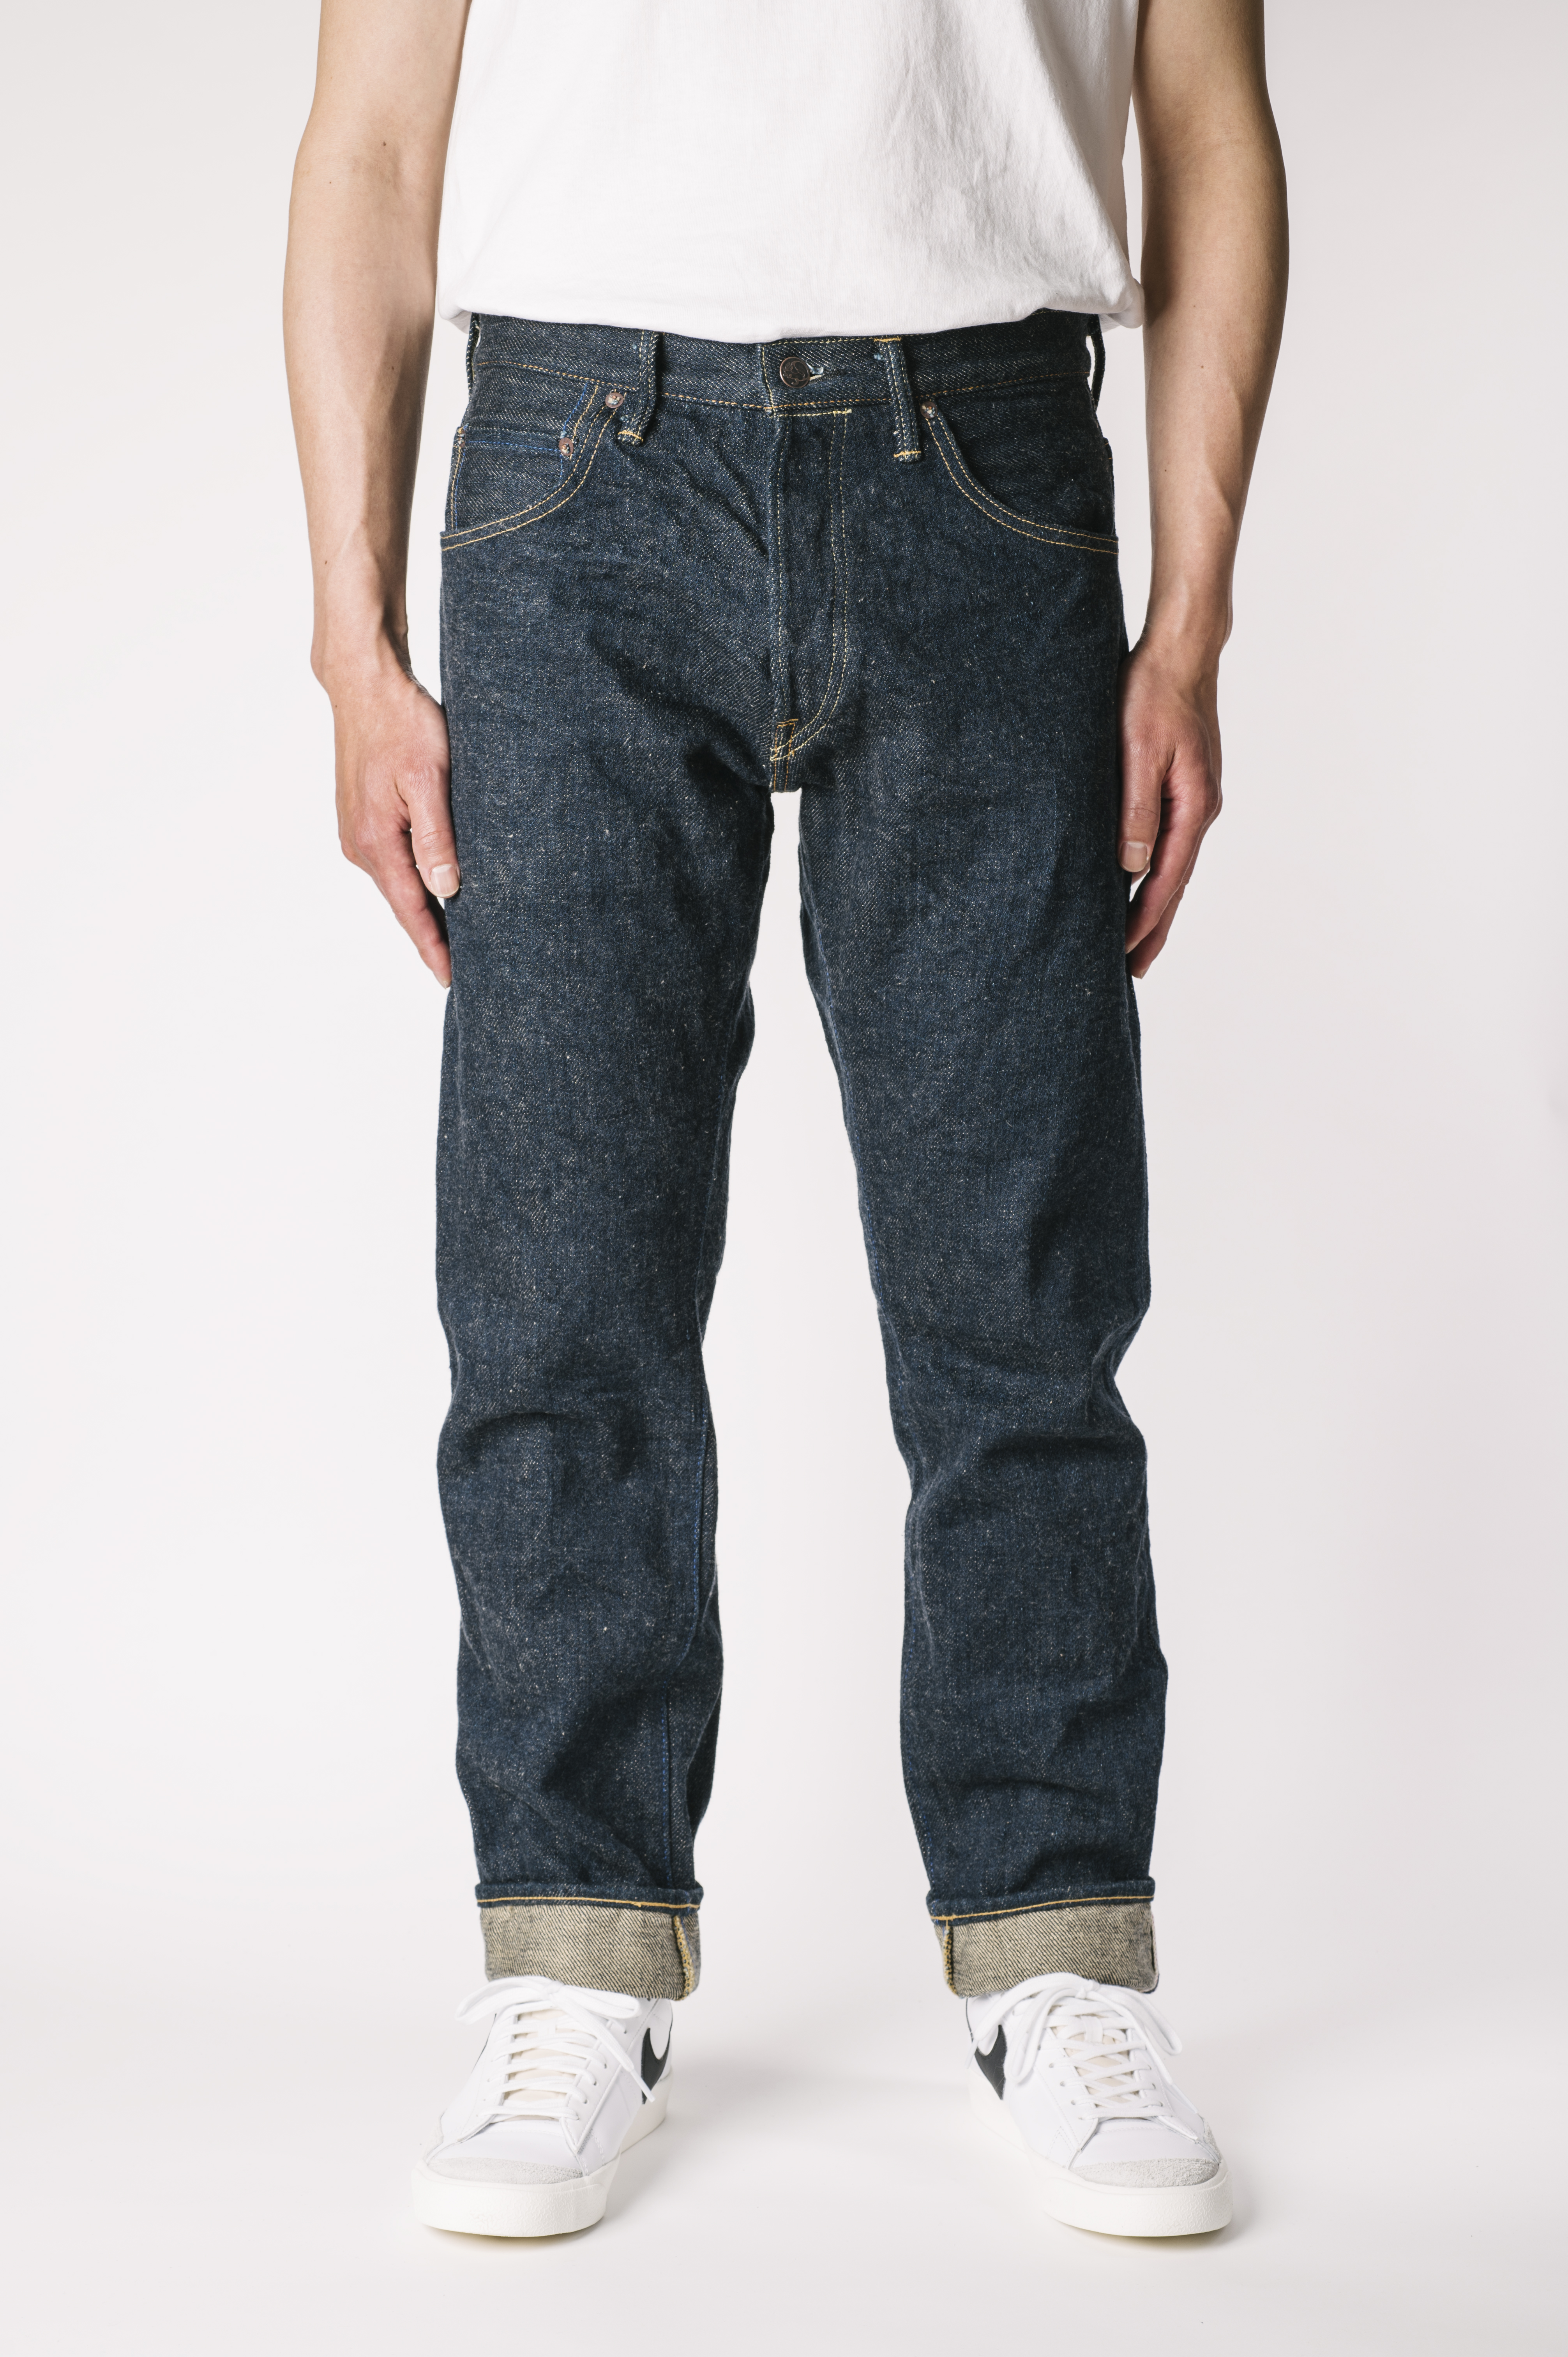 OTHT ONI x TANUKI Collaboration 21.5oz Secret Denim High Rise Tapered Jeans,, large image number 0